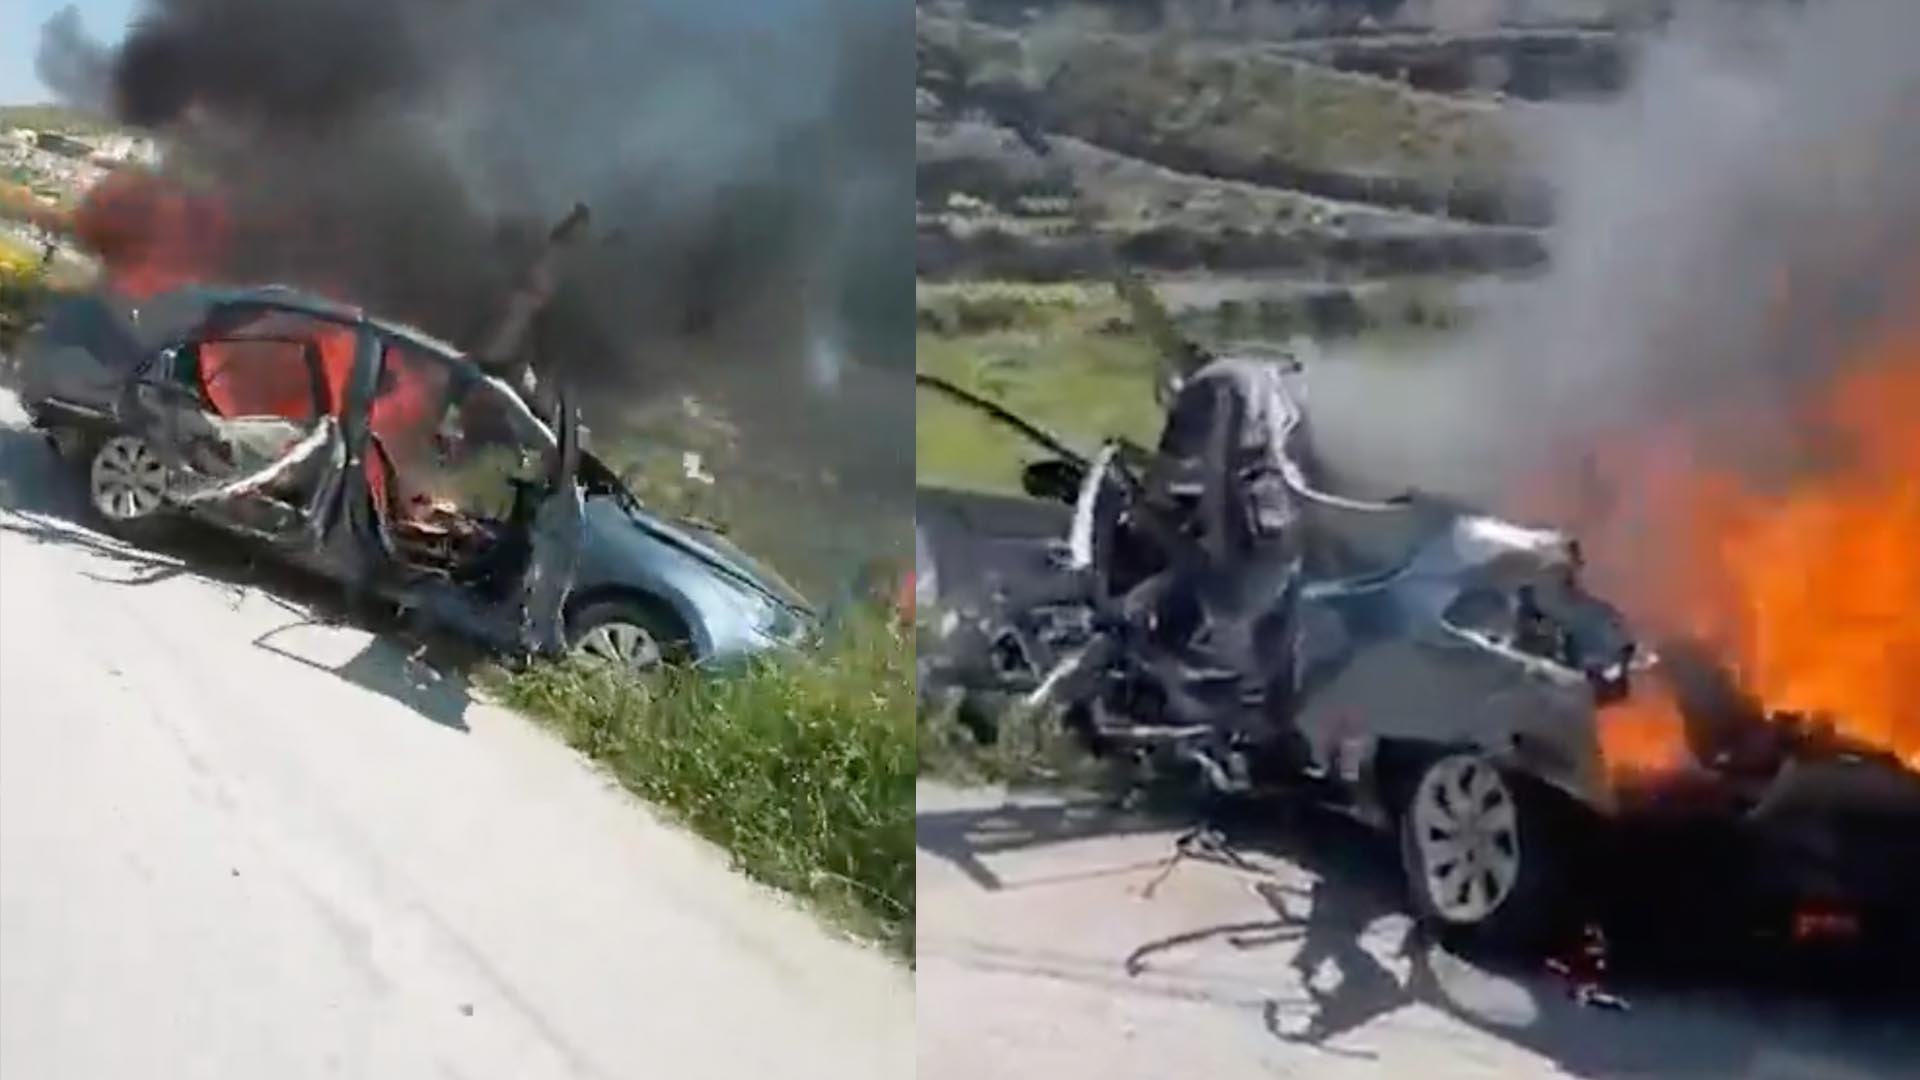 Hezbollah commander killed in Israeli drone strike in Lebanon | Hezbollah [Video]